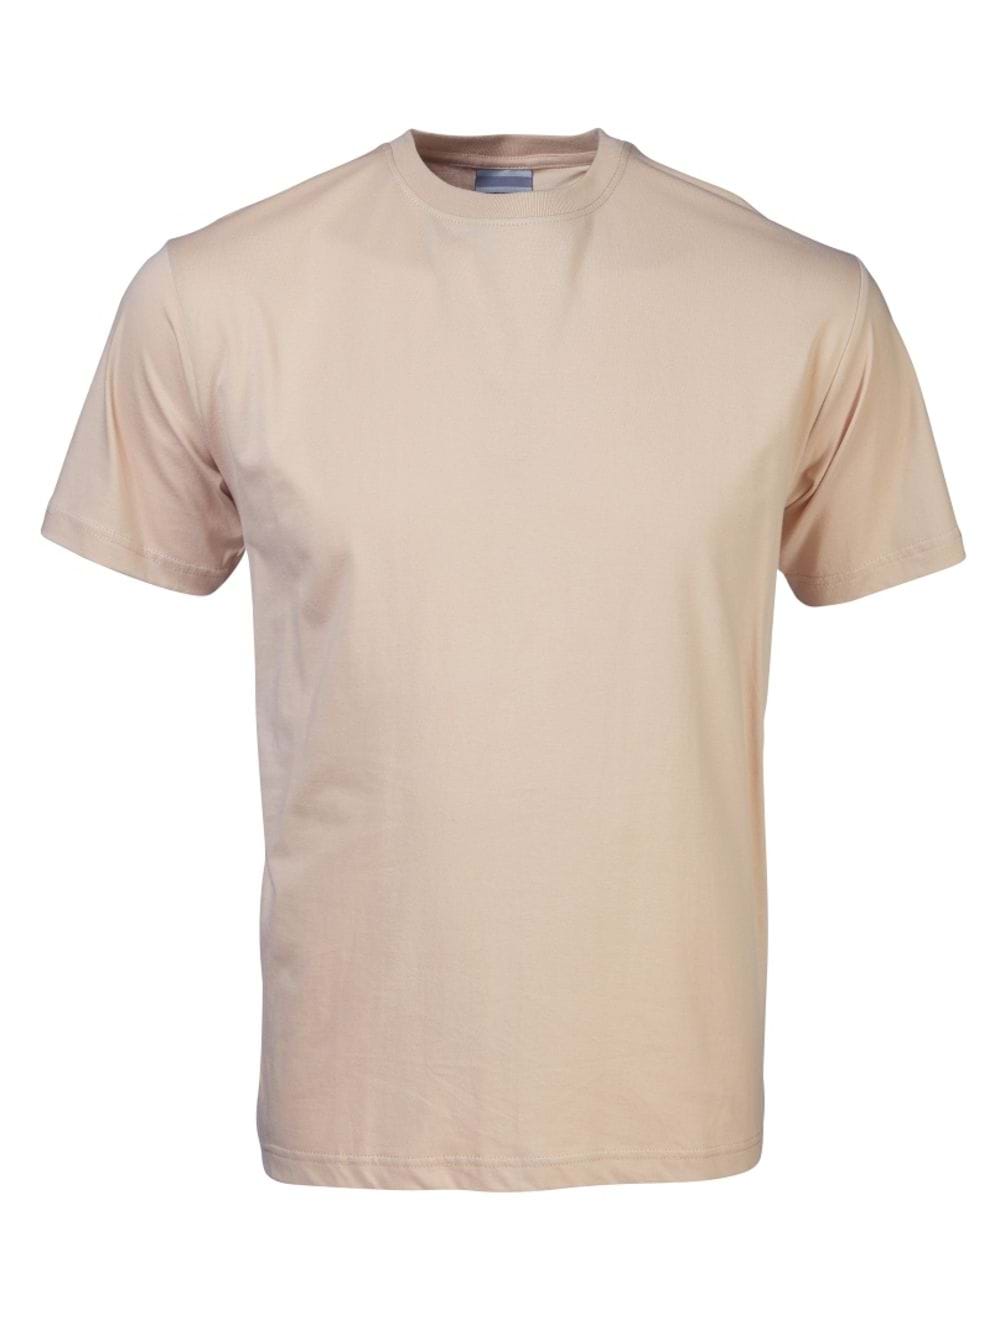 165G Crew Neck T-Shirt - Beige Light Brown / 4XL